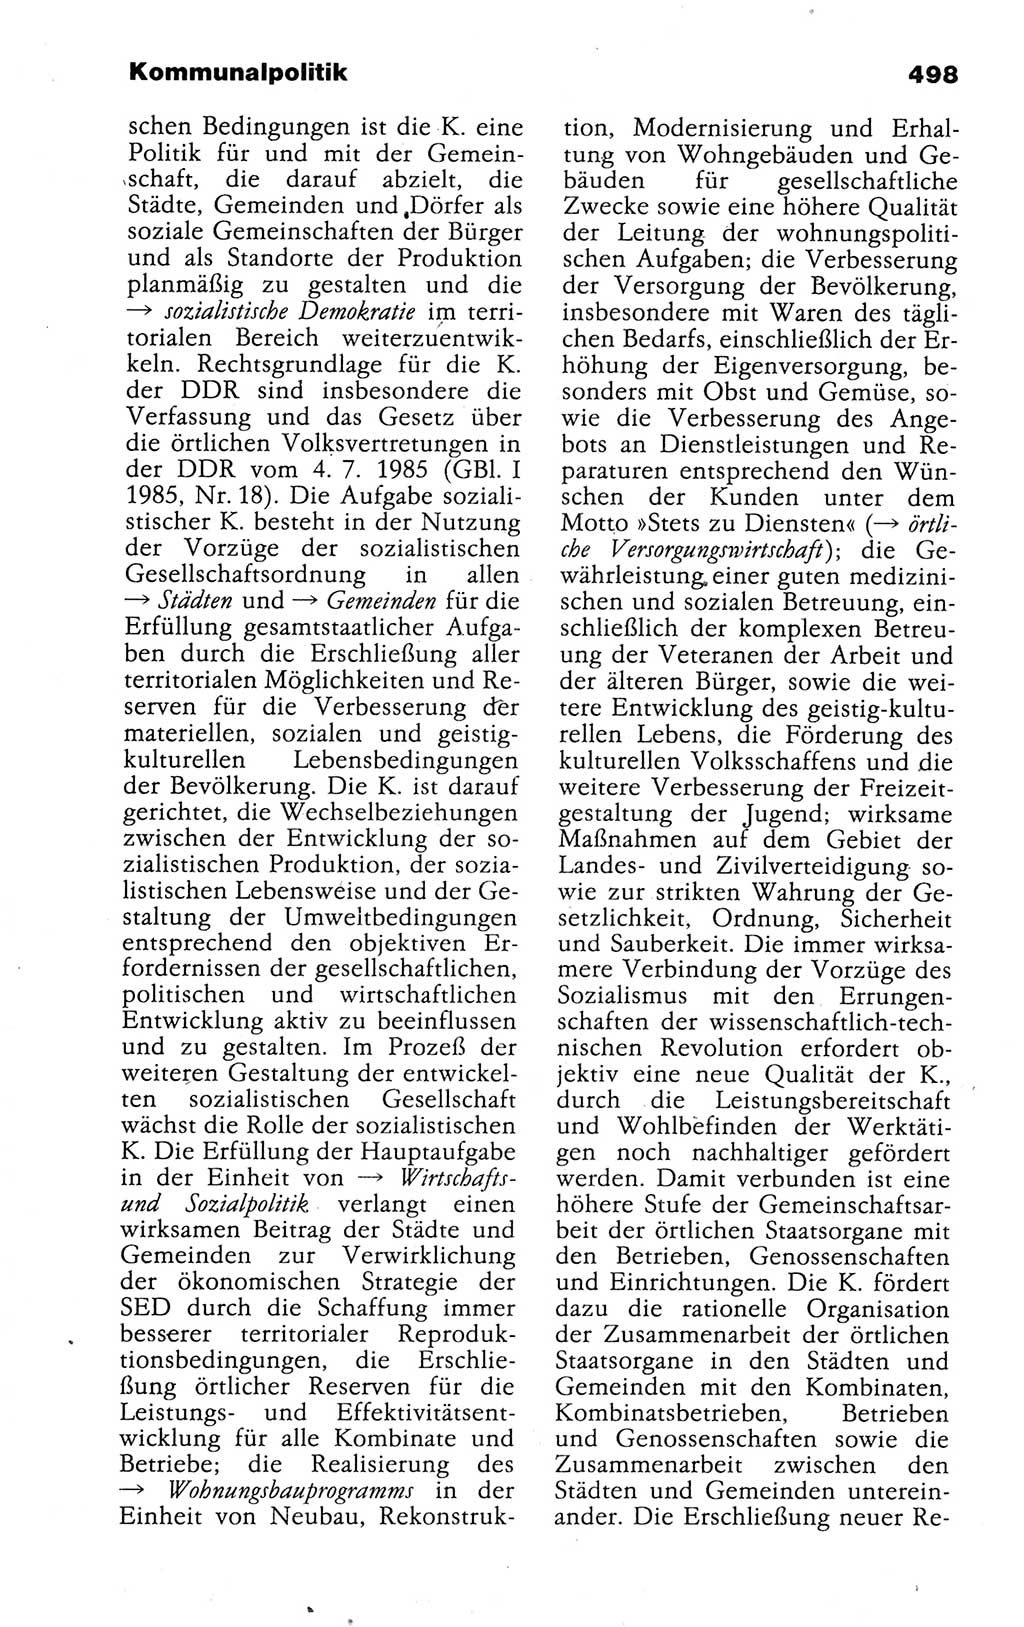 Kleines politisches Wörterbuch [Deutsche Demokratische Republik (DDR)] 1988, Seite 498 (Kl. pol. Wb. DDR 1988, S. 498)